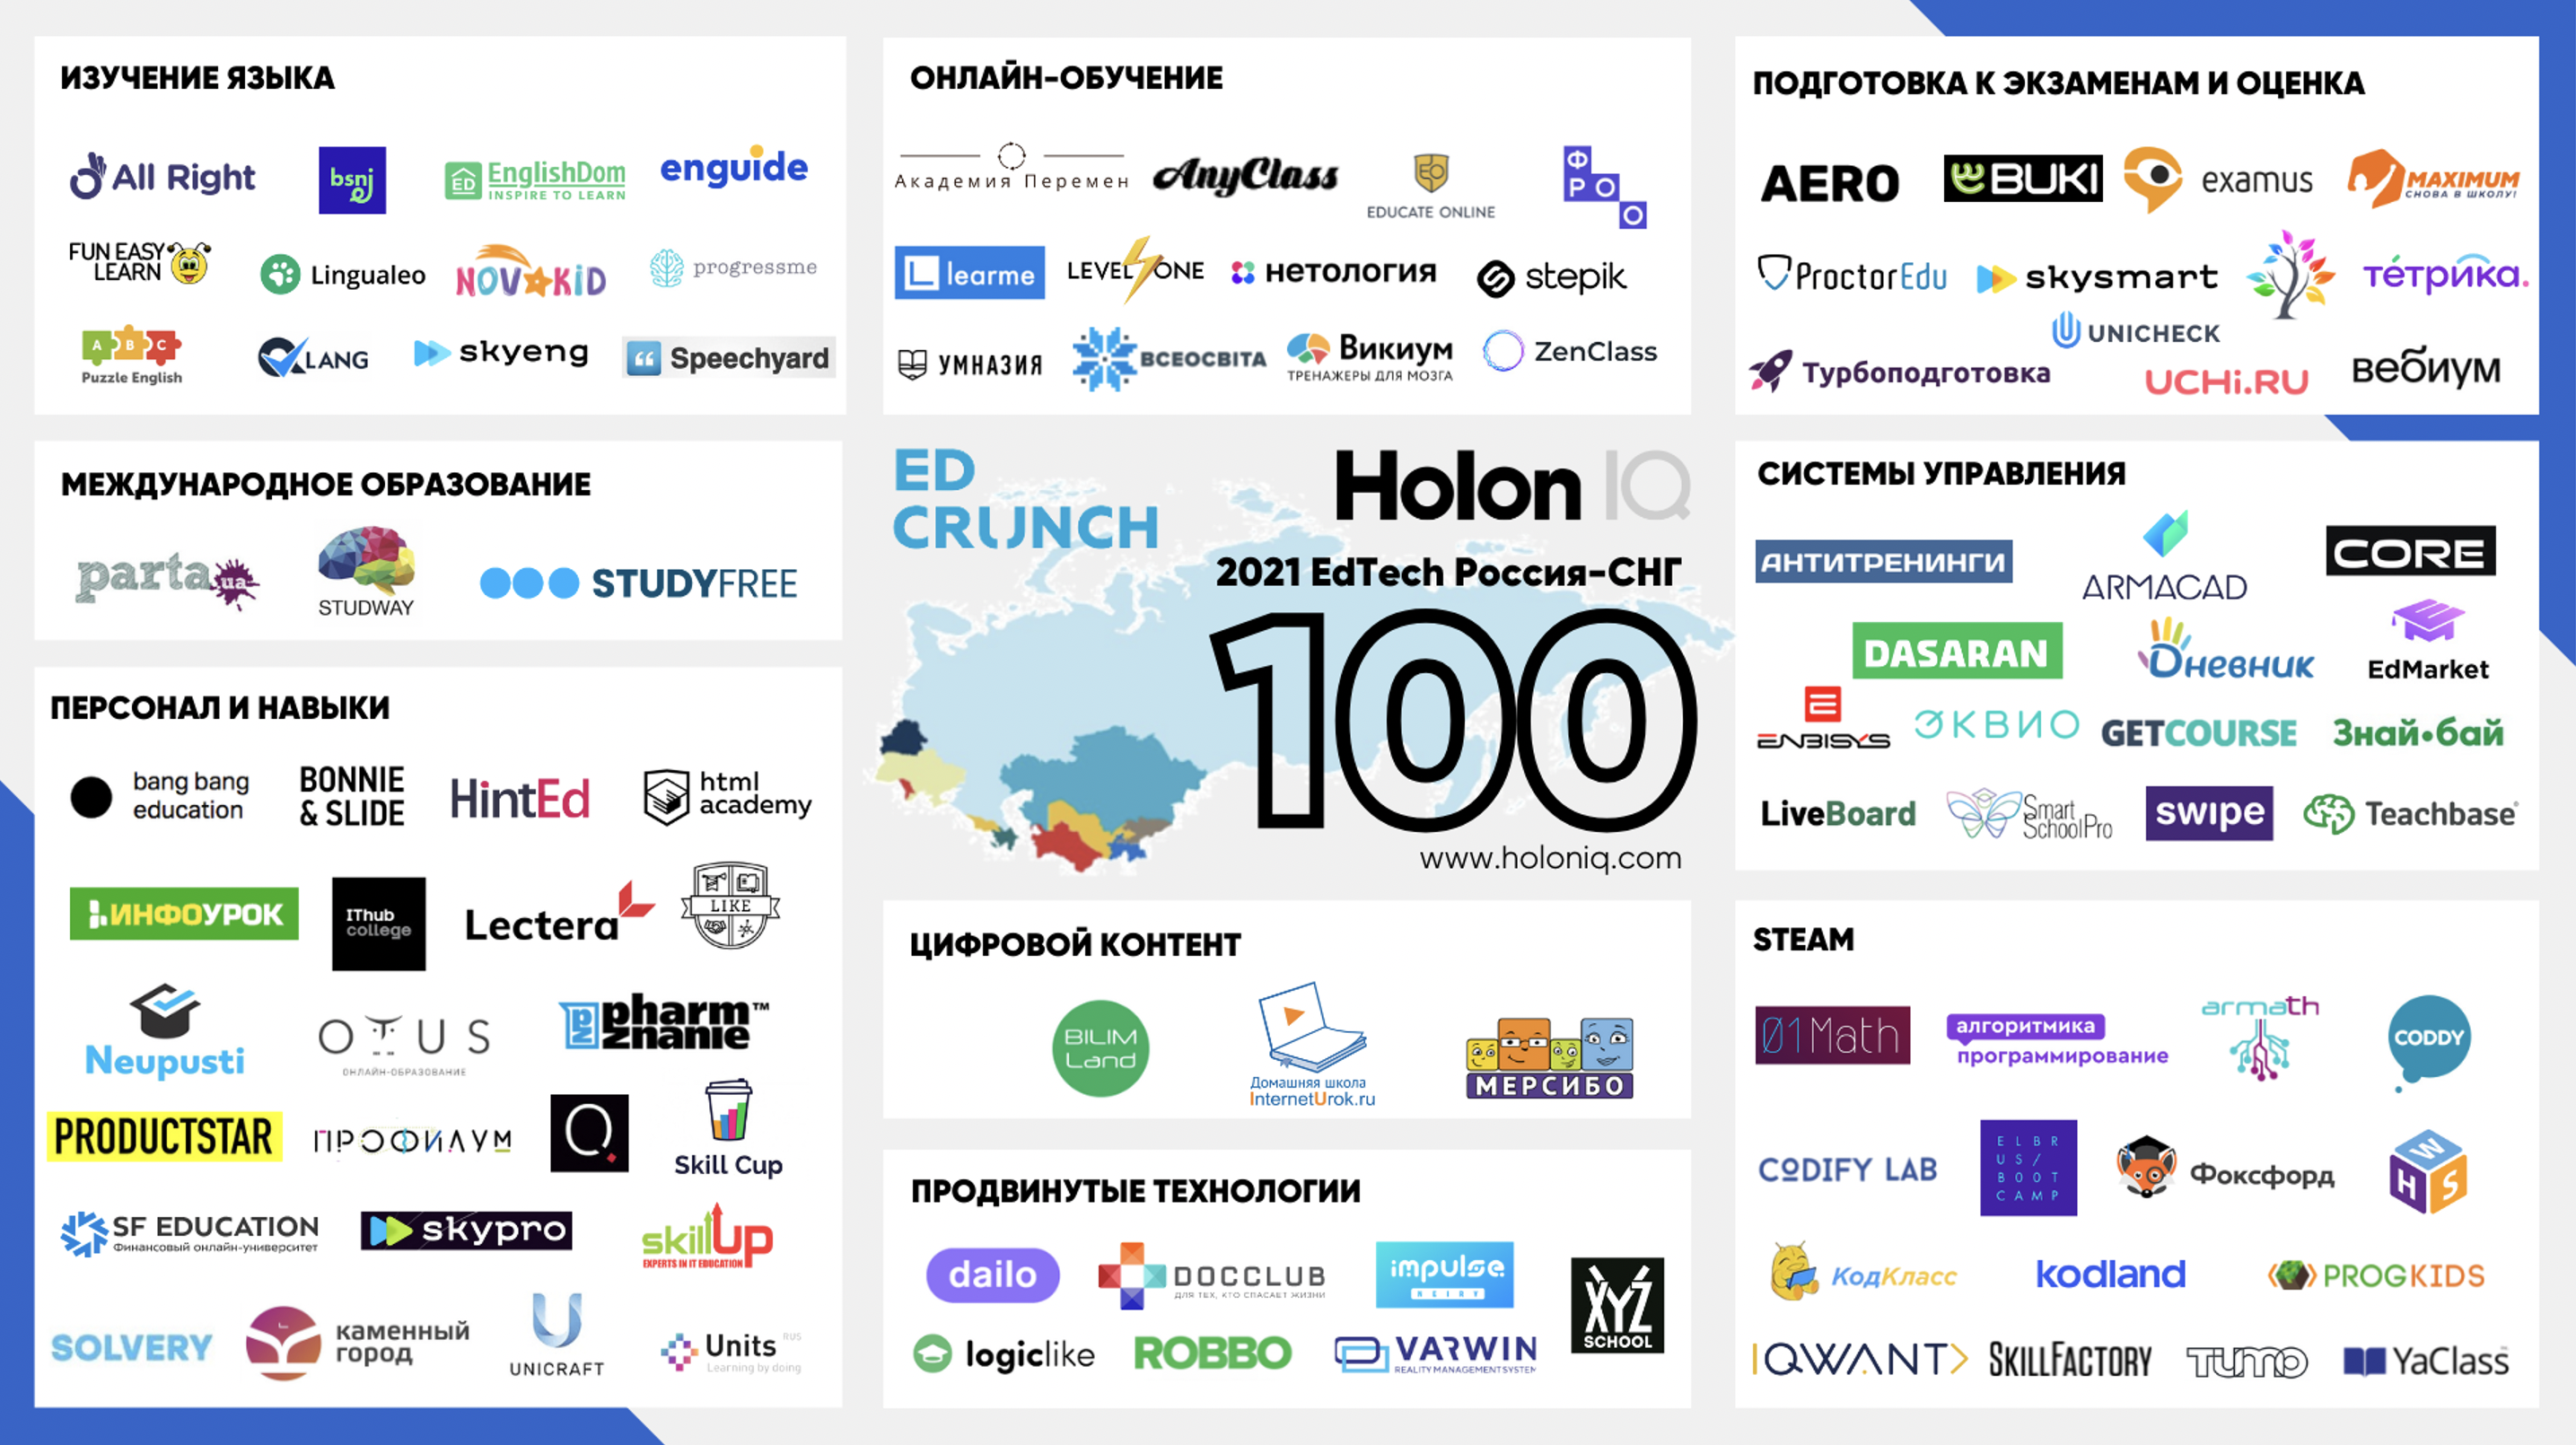 Проект «Знай•бай» вновь вошел в рейтинг Топ-100 лучших стартапов СНГ!